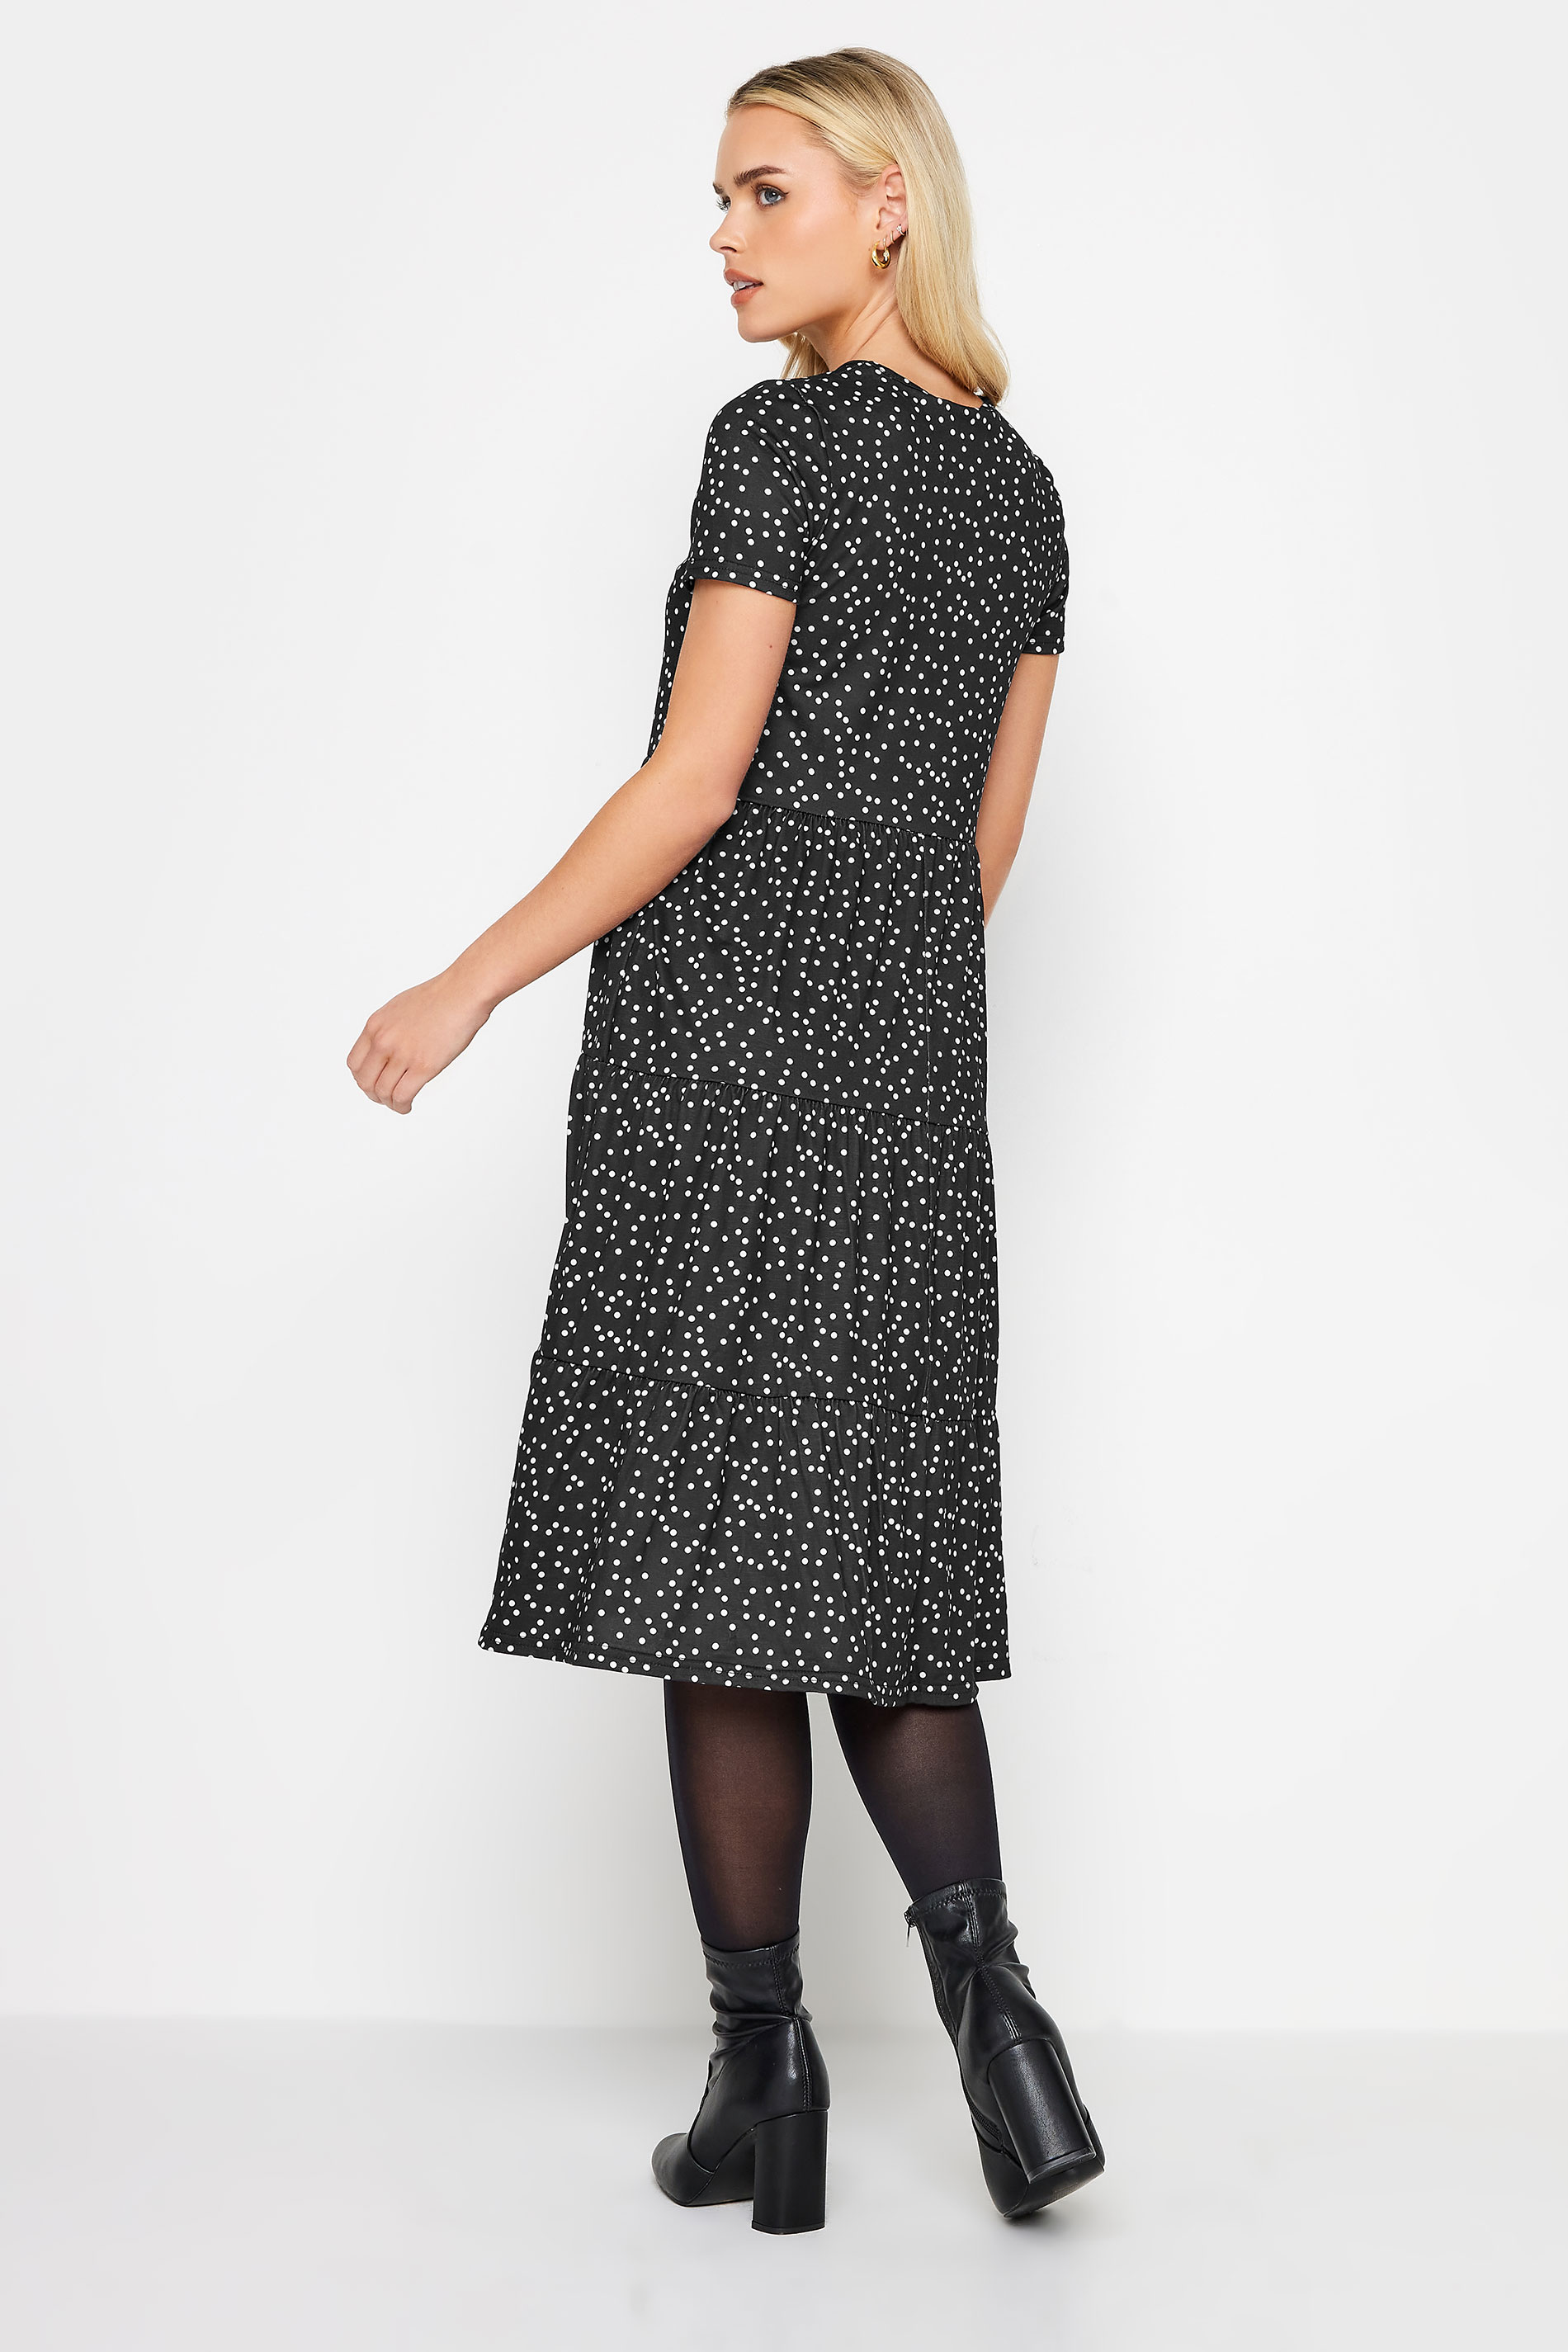 PixieGirl Black Polka Dot Tiered Midi Dress | PixieGirl 3